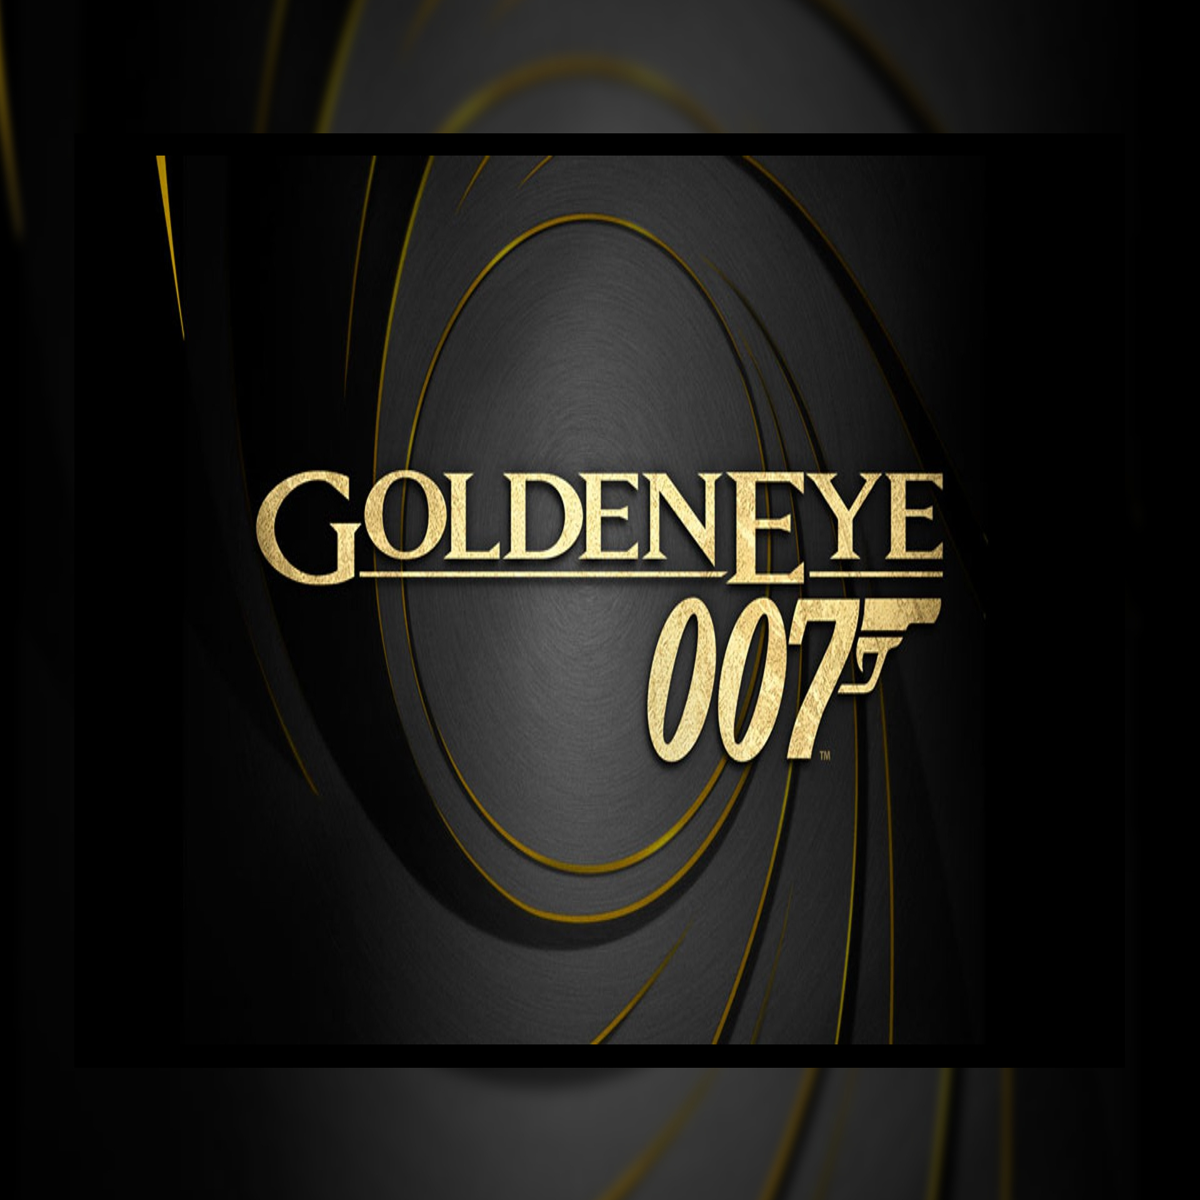 TODAS AS FASES DO 007 GOLDENEYE no 00 AGENT (DETONADO COMPLETO 007